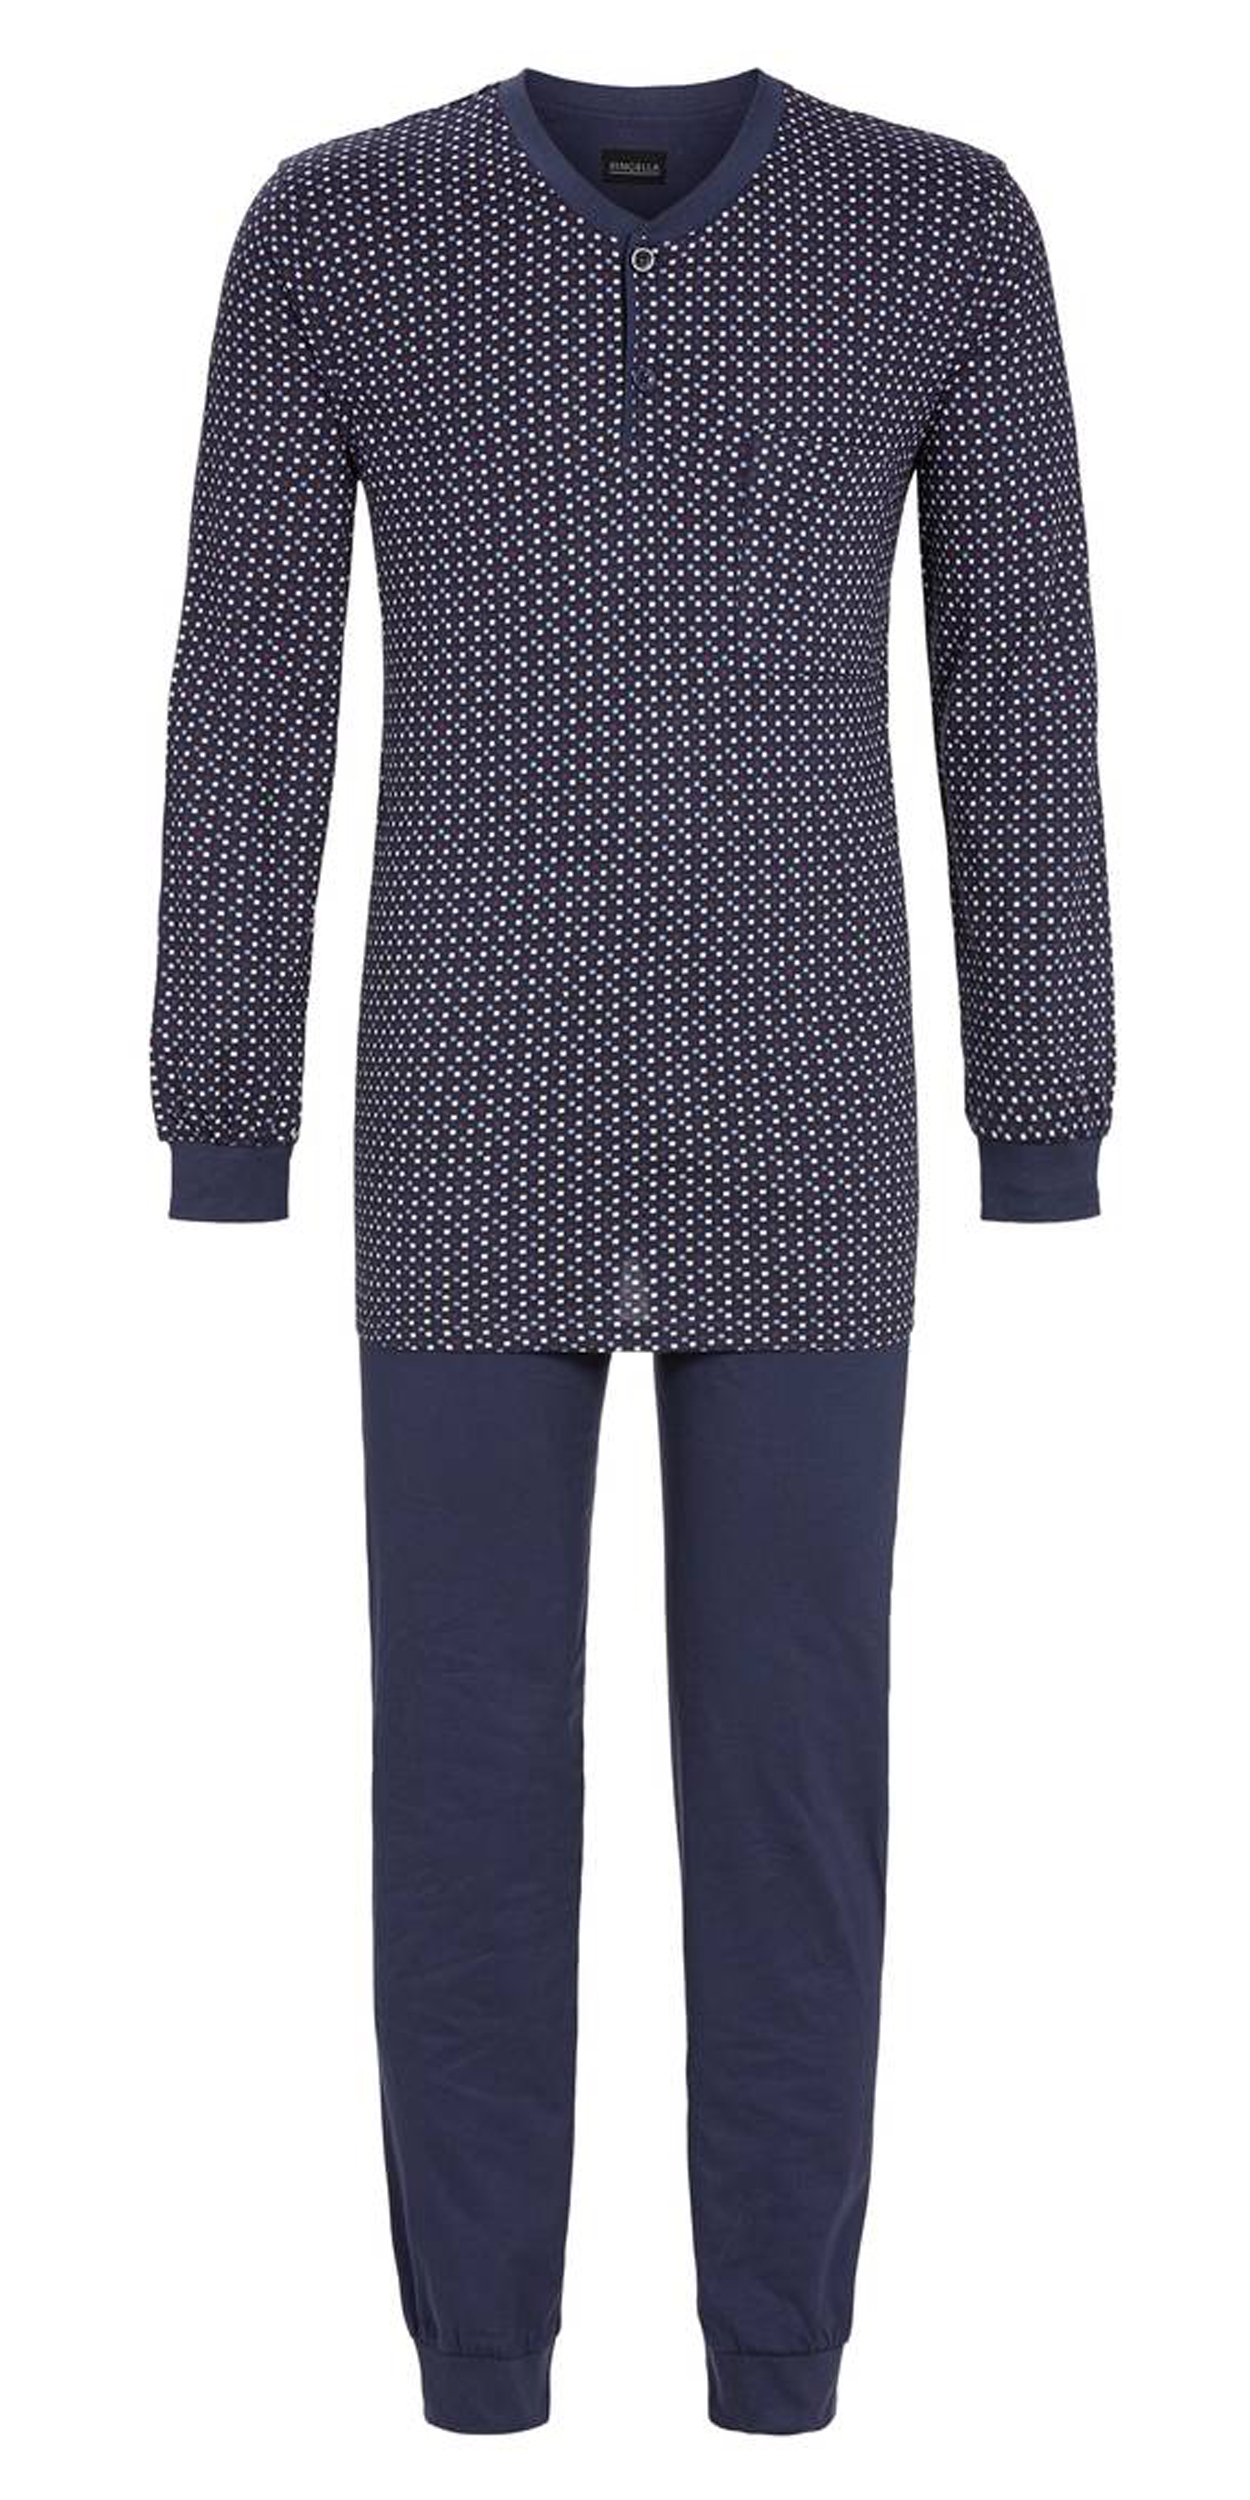 Pyjama long Ringella en coton mélangé : tee-shirt manches longues à micro motifs et pantalon bleu ma